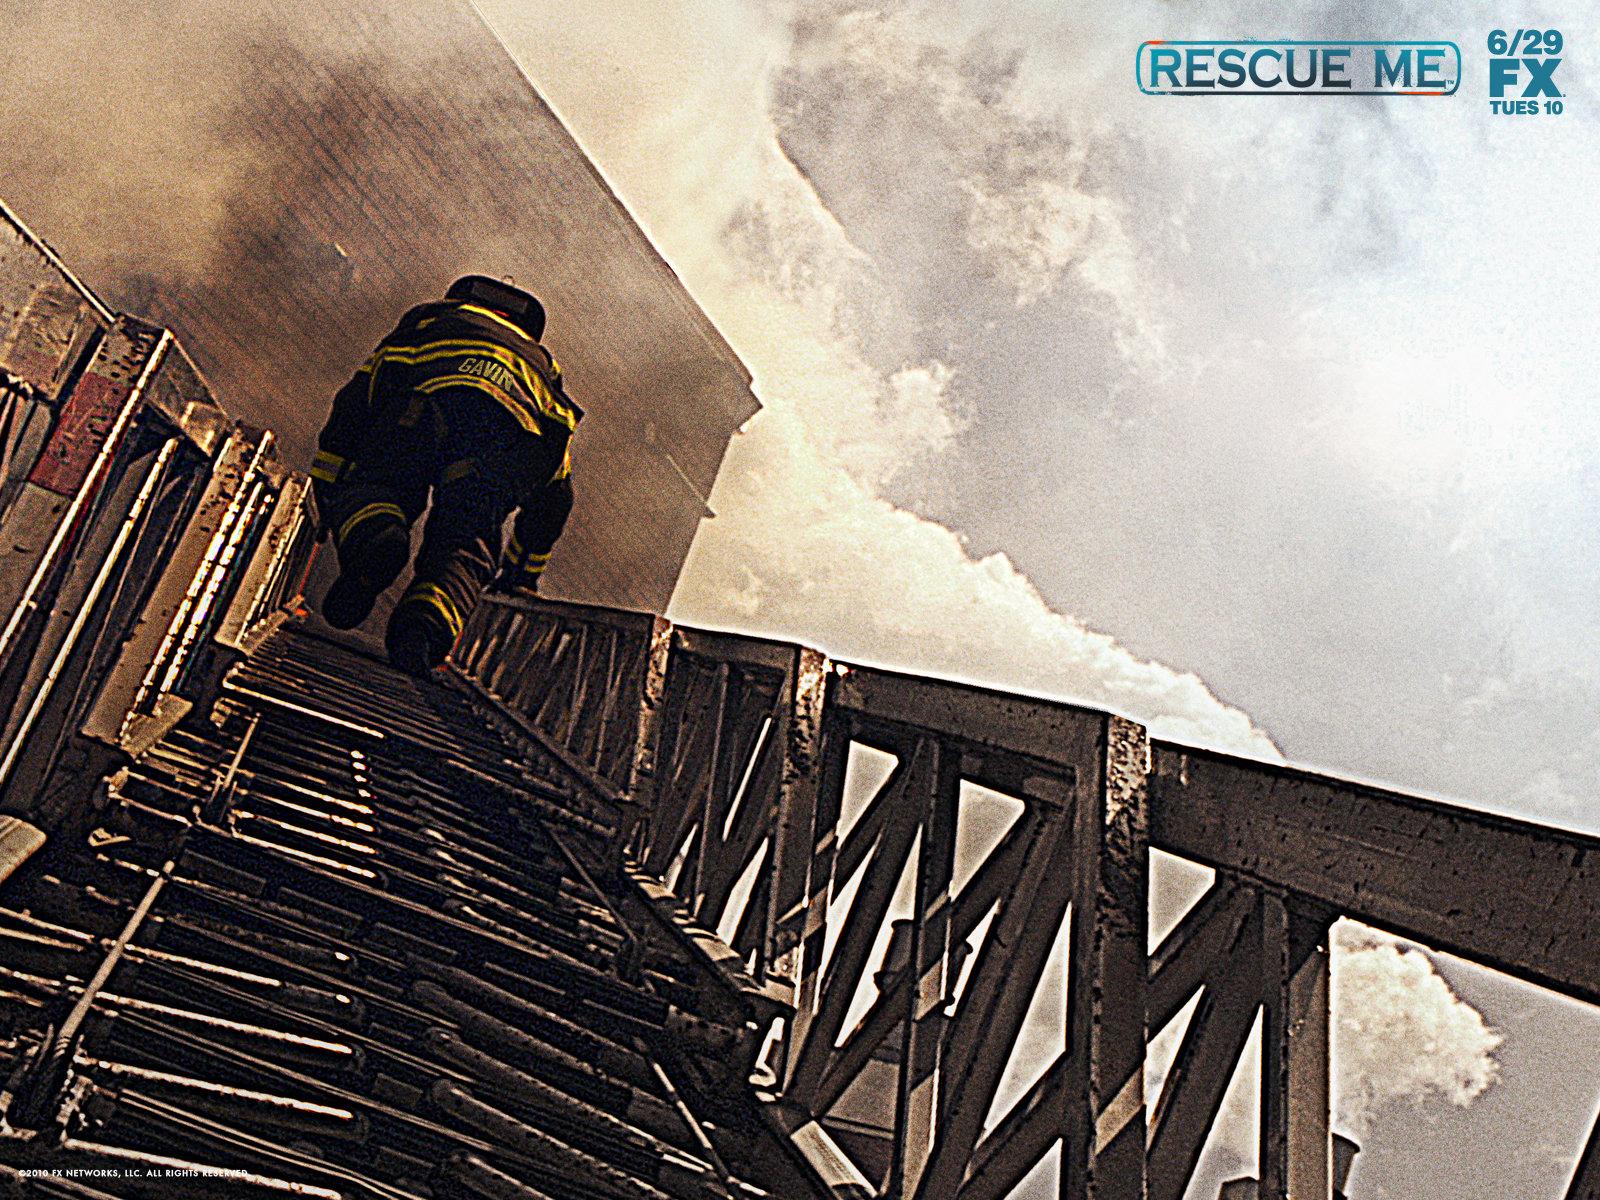 Rescue Me Wallpaper. Fire Rescue